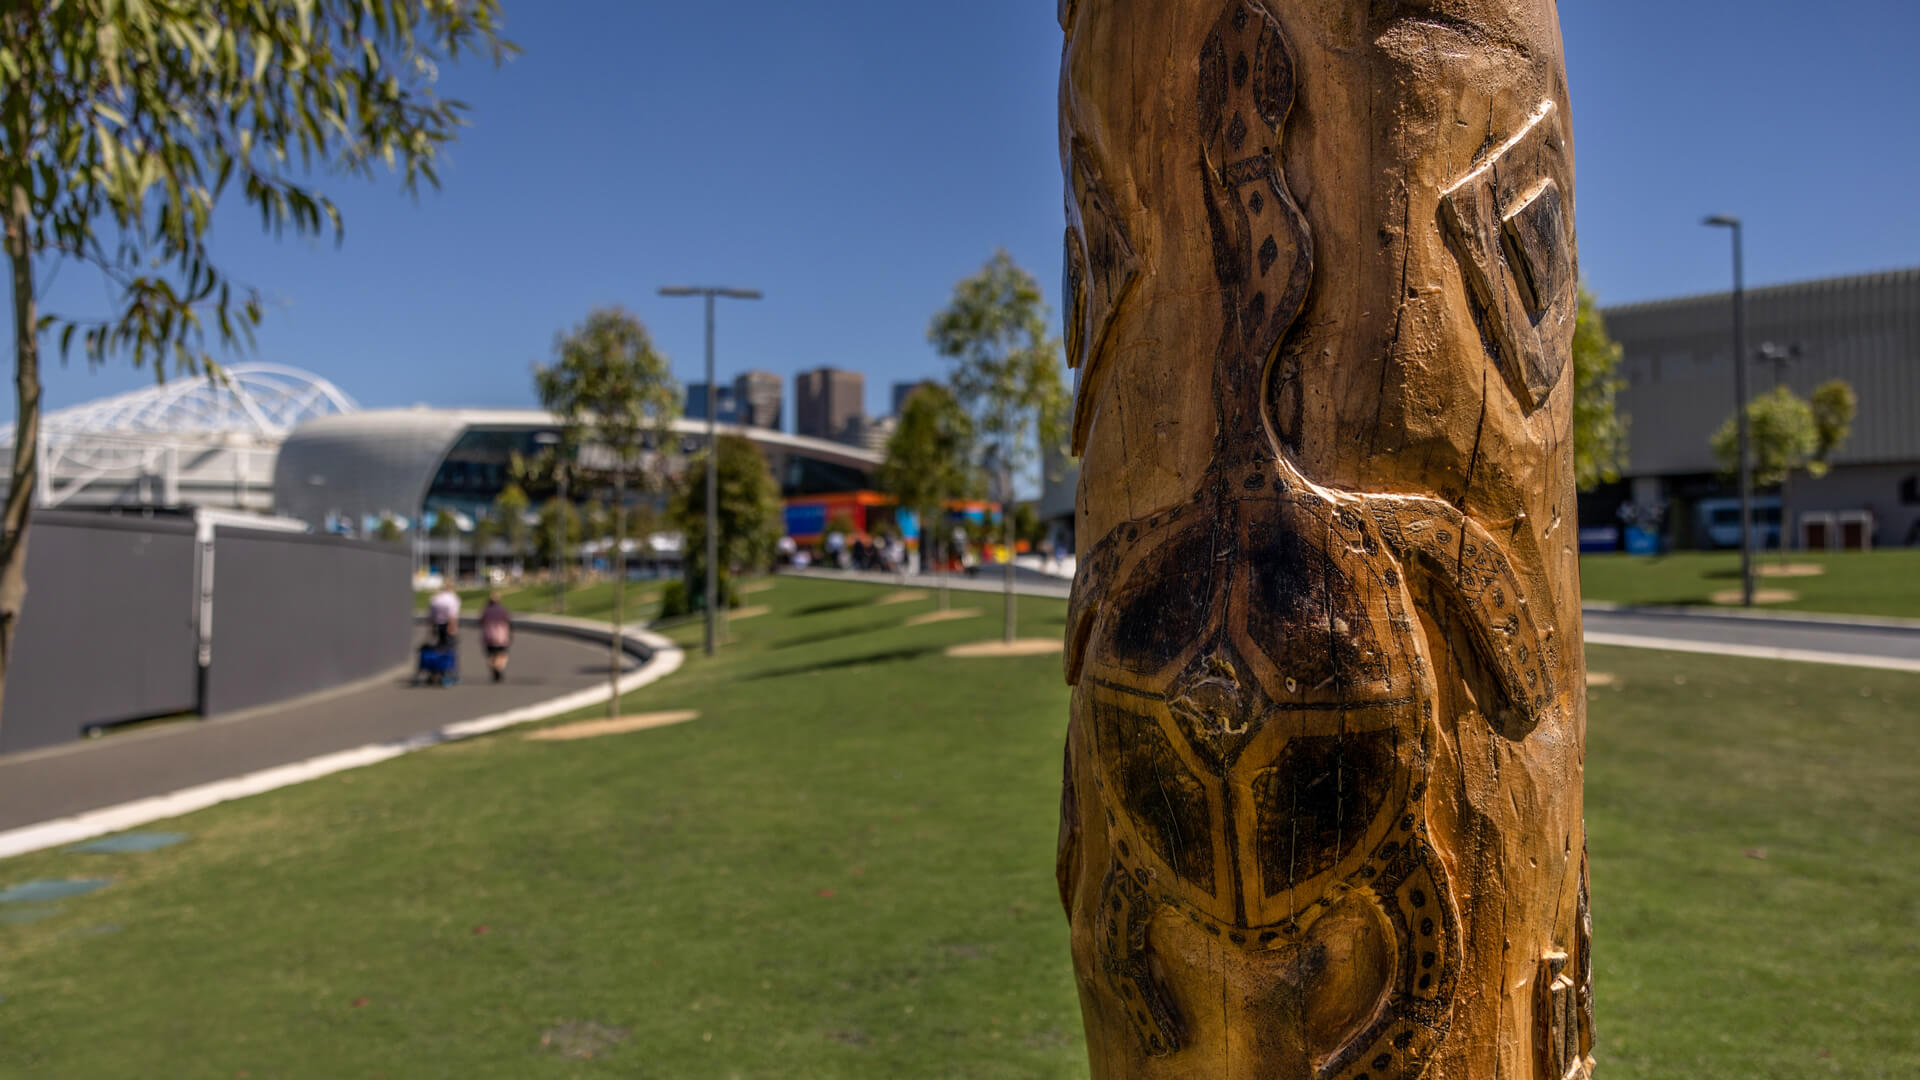 Cultural marker unveiled at Melbourne Park